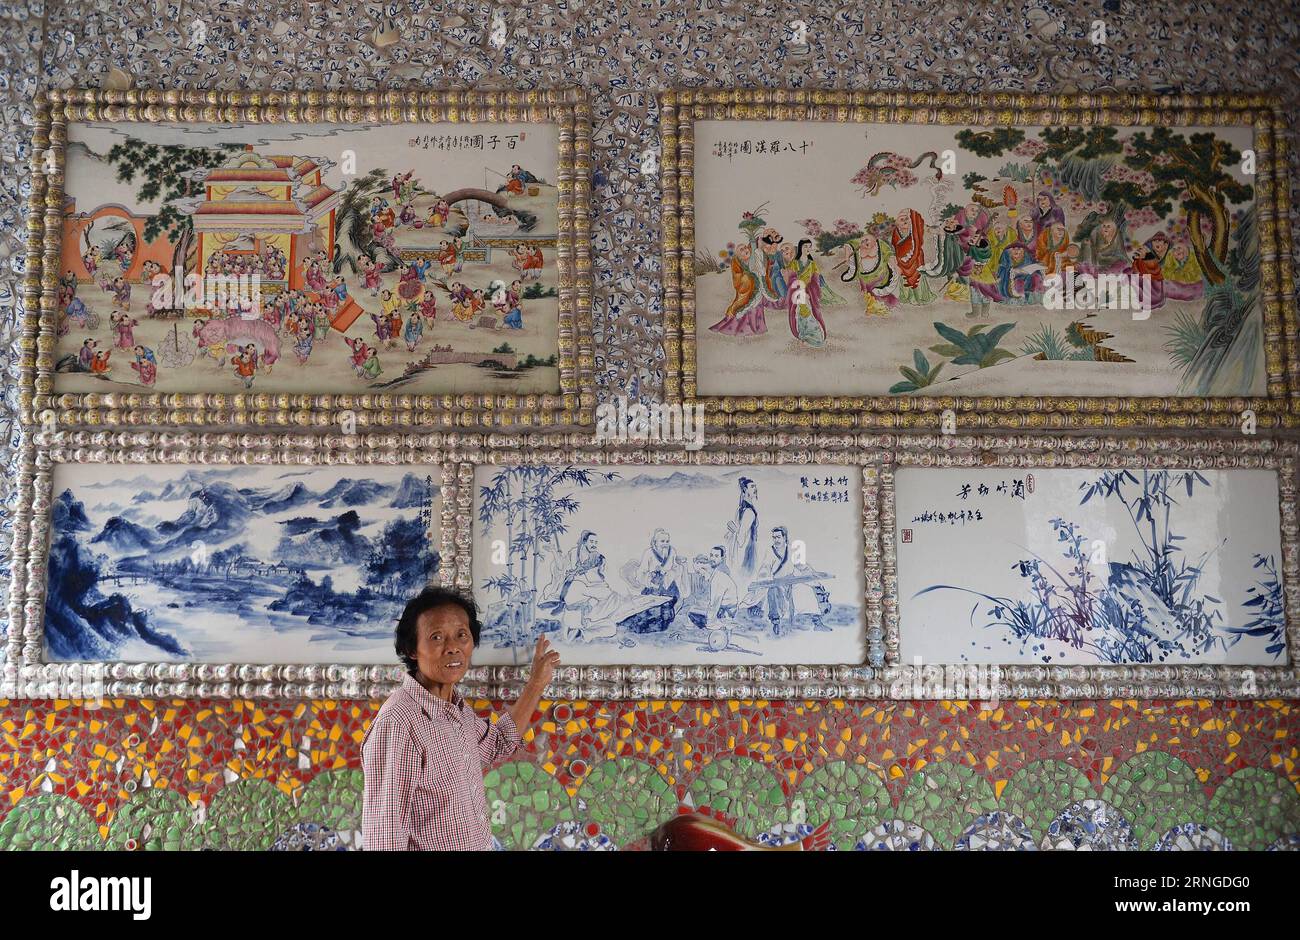 (160922) -- NANCHANG, 21 septembre 2016 -- Yu Ermei présente des peintures sur porcelaine à son palais processuel dans le village de Xinping du comté de Fuliang à Jingdezhen, dans la province de Jiangxi dans l'est de la Chine, le 21 septembre 2016. Le villageois de 86 ans Yu Ermei a passé cinq ans à construire ce palais de porcelaine. Le bâtiment circulaire de trois étages est décoré de plus de 60 000 pièces de porcelaine. (zkr) CHINA-JIANGXI-JINGDEZHEN-PORCELAINE PALACE(CN) WanxXiang PUBLICATIONxNOTxINxCHN Nanchang sept 21 2016 Yu présente des peintures en porcelaine À son palais de procédure dans le village de Xinping du comté de Fuliang dans Jingdezhen EAS Banque D'Images